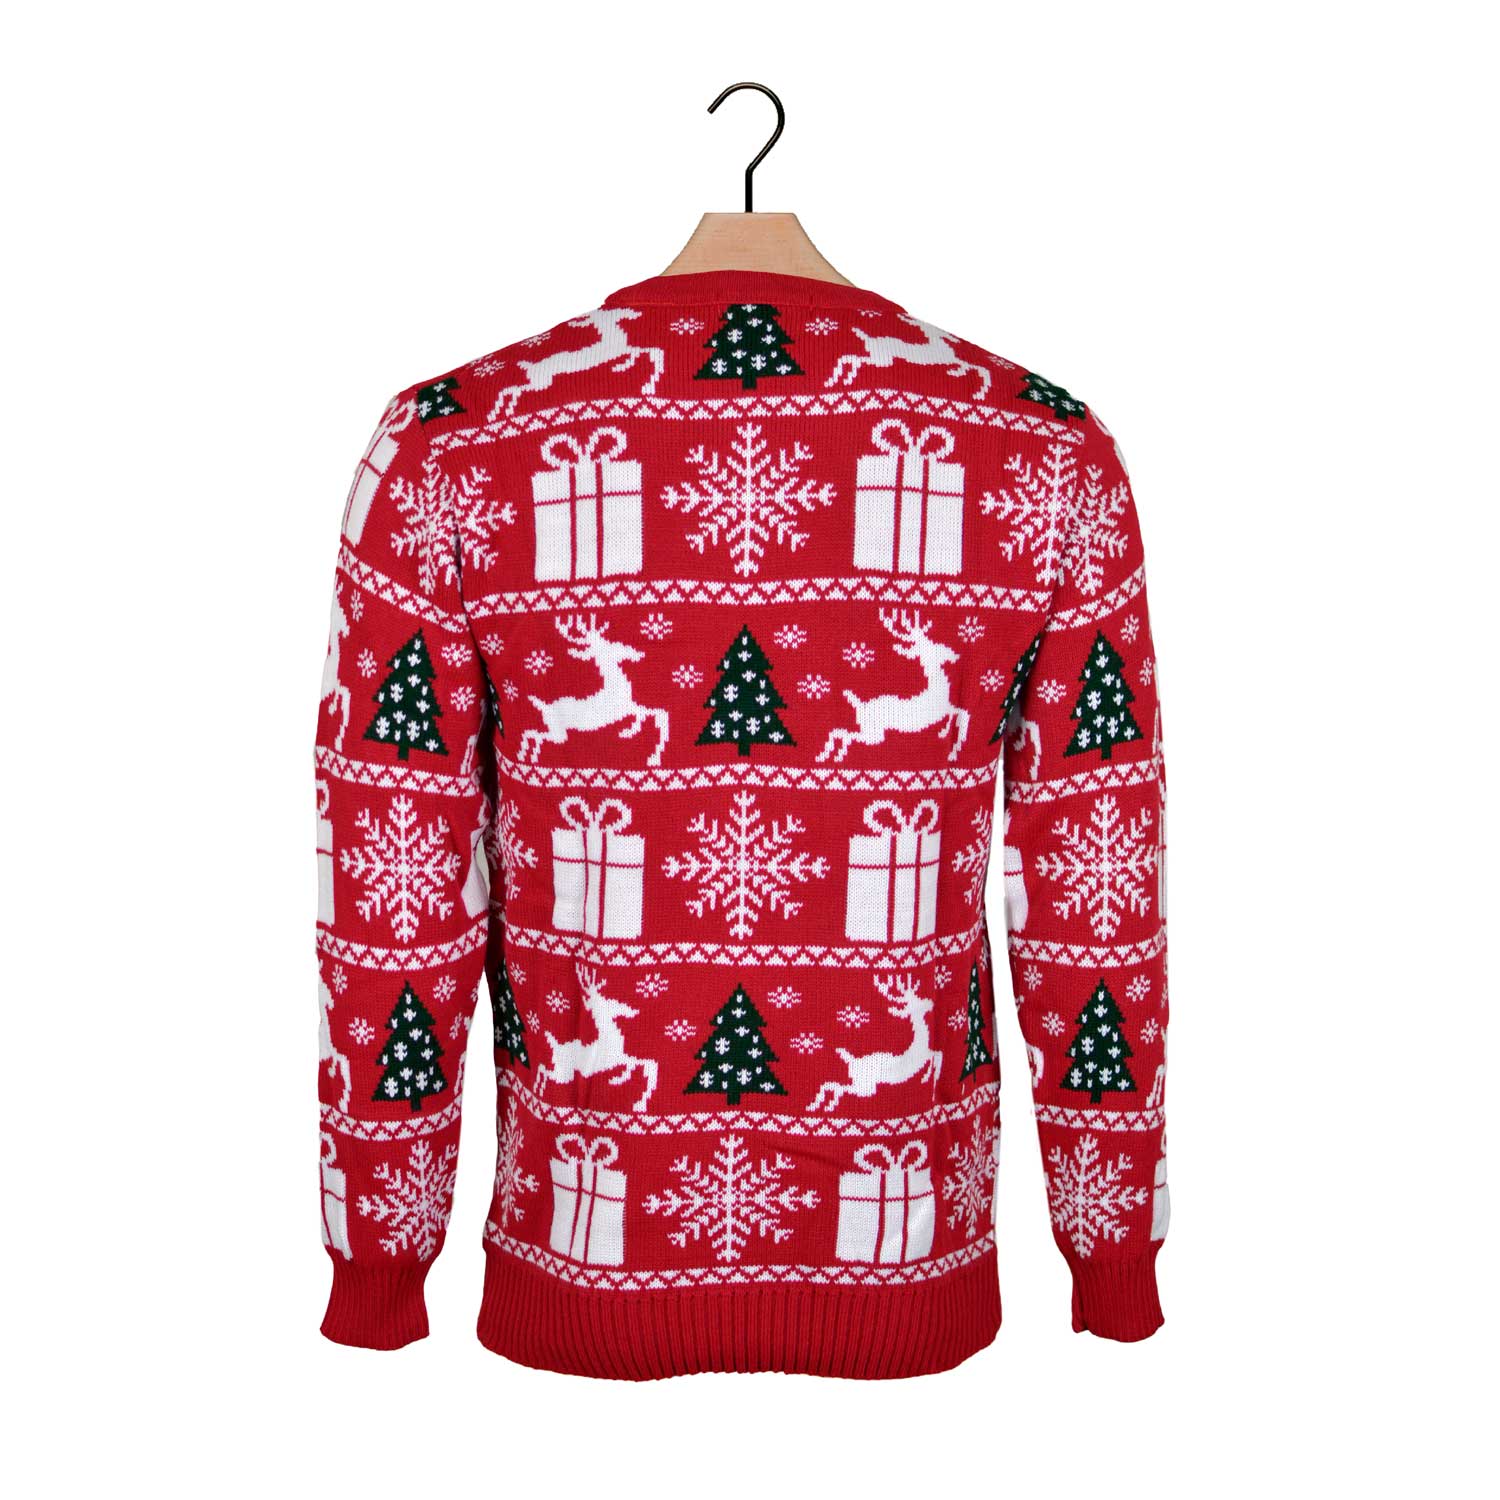 Sweter Świąteczny z Reniferami, Choinkami i Prezentami powrotem